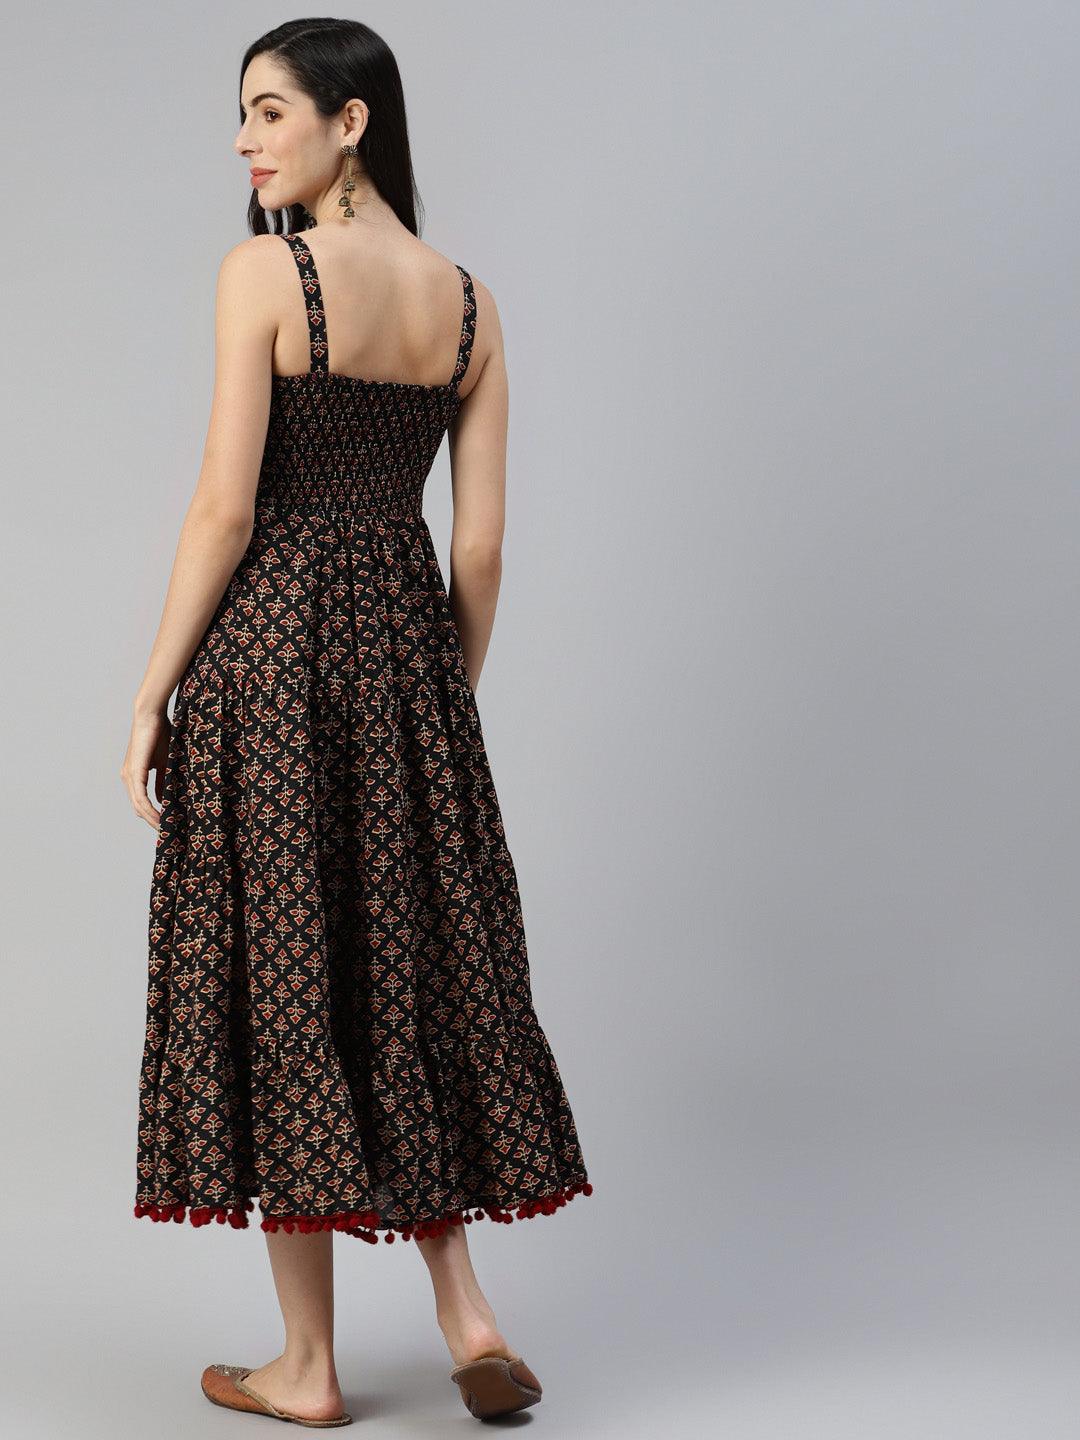 Divena Black Floral Printed Shoulder Strip Long dress - divena world